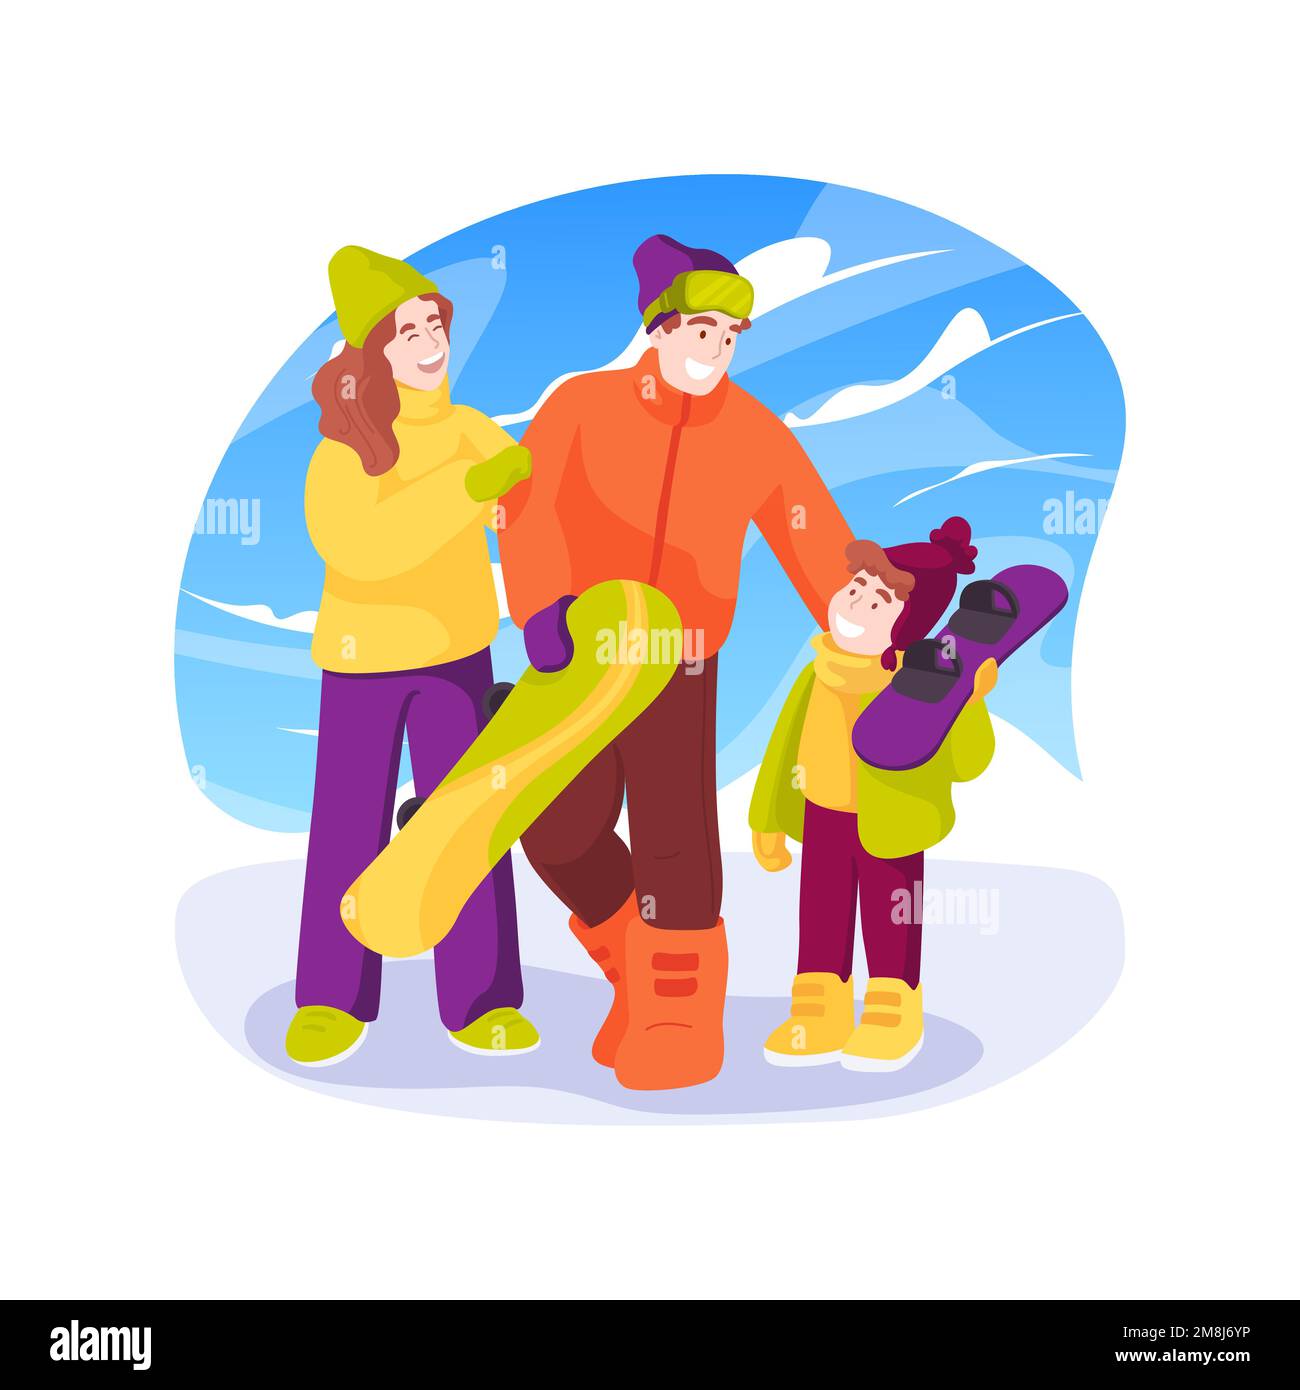 Familien-Snowboarden, isolierte Cartoon-Vektordarstellung. Glückliche Familienmitglieder Snowboarden zusammen, Leute aktiver Lebensstil, körperliche Aktivität, Leis Stock Vektor